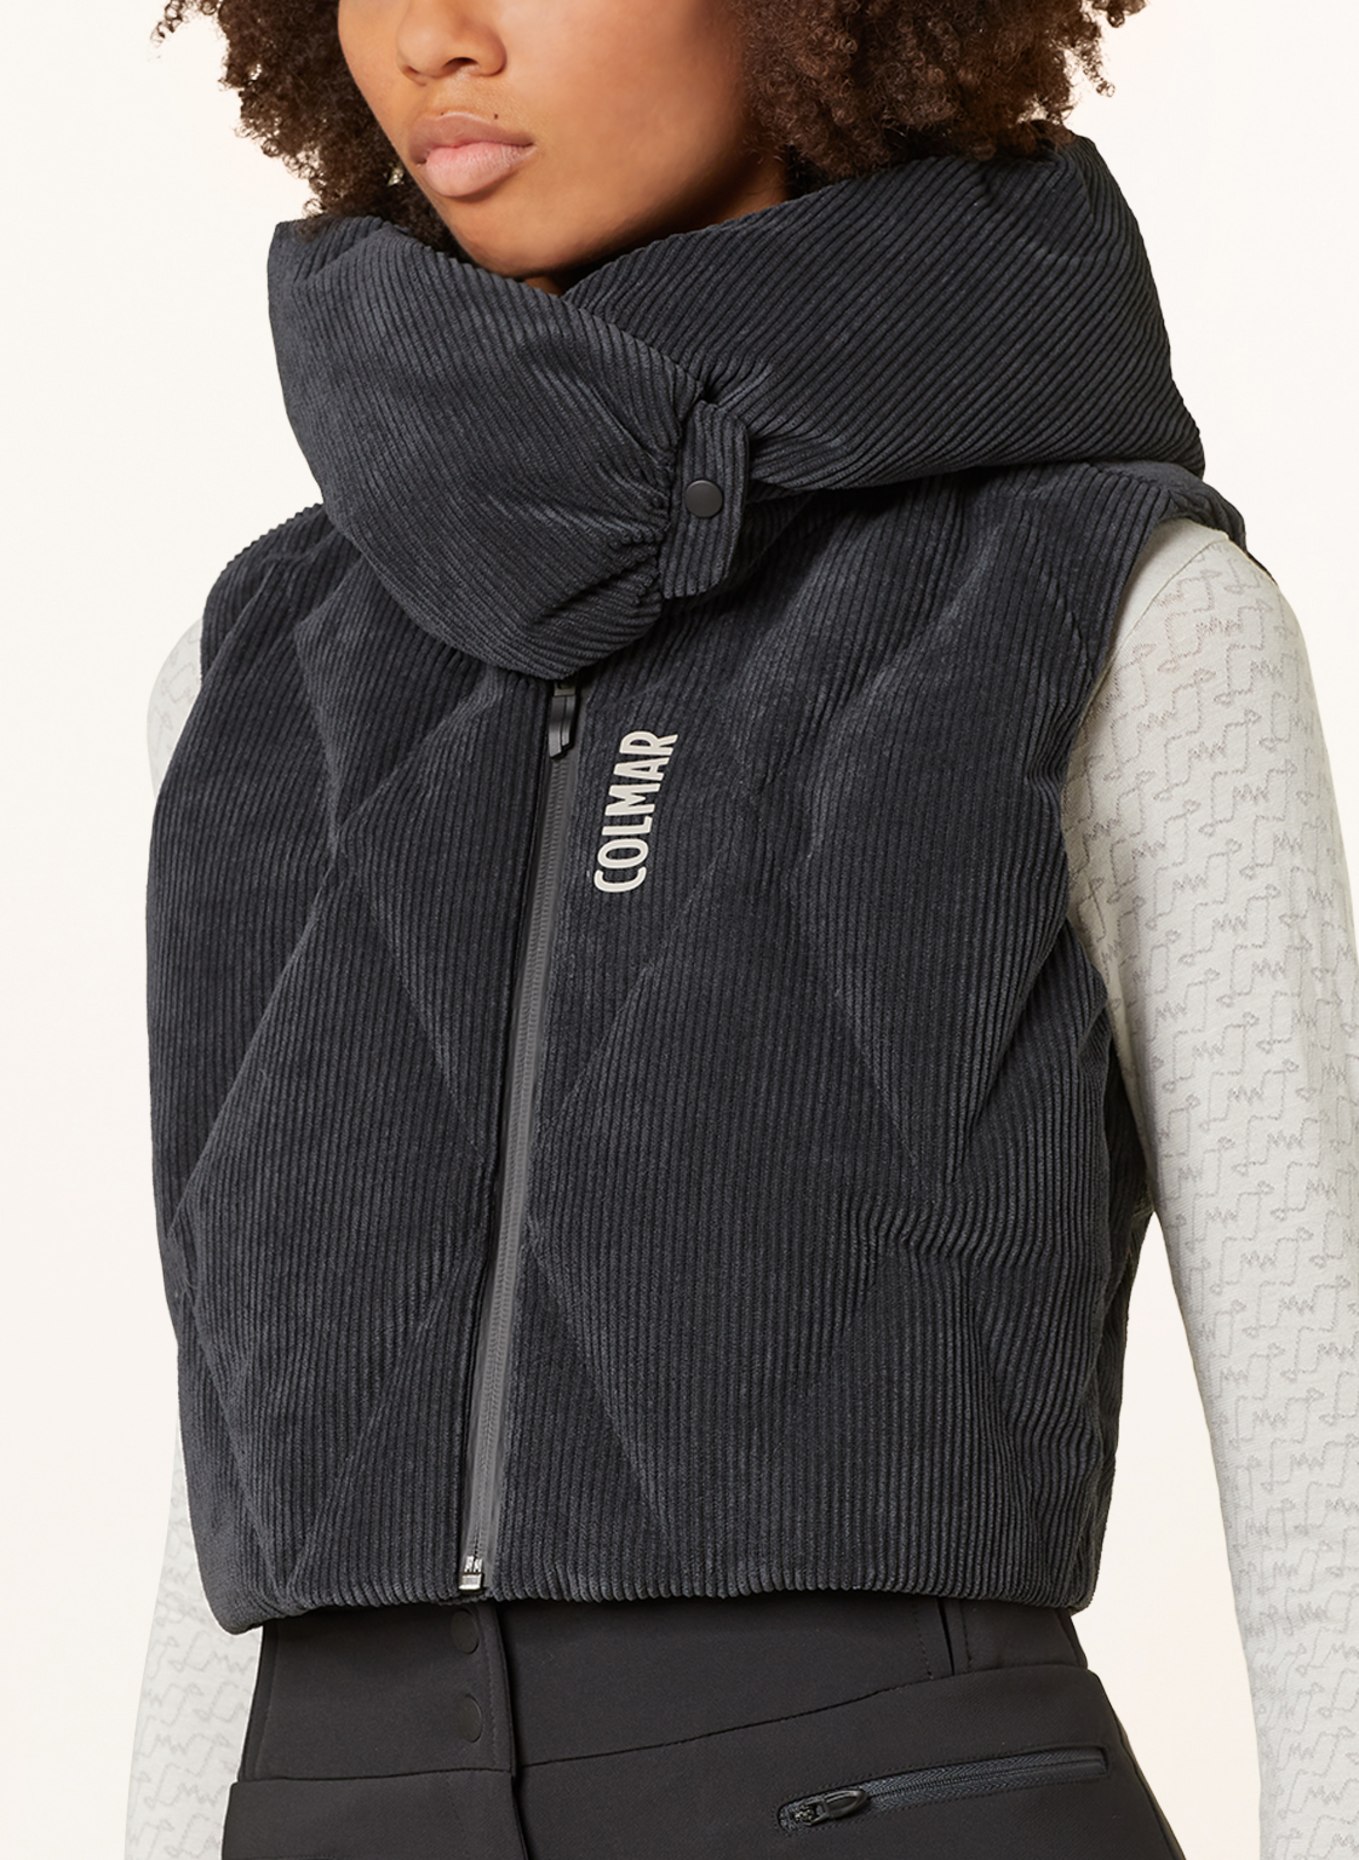 COLMAR Ski vest made of corduroy, Color: BLACK (Image 5)